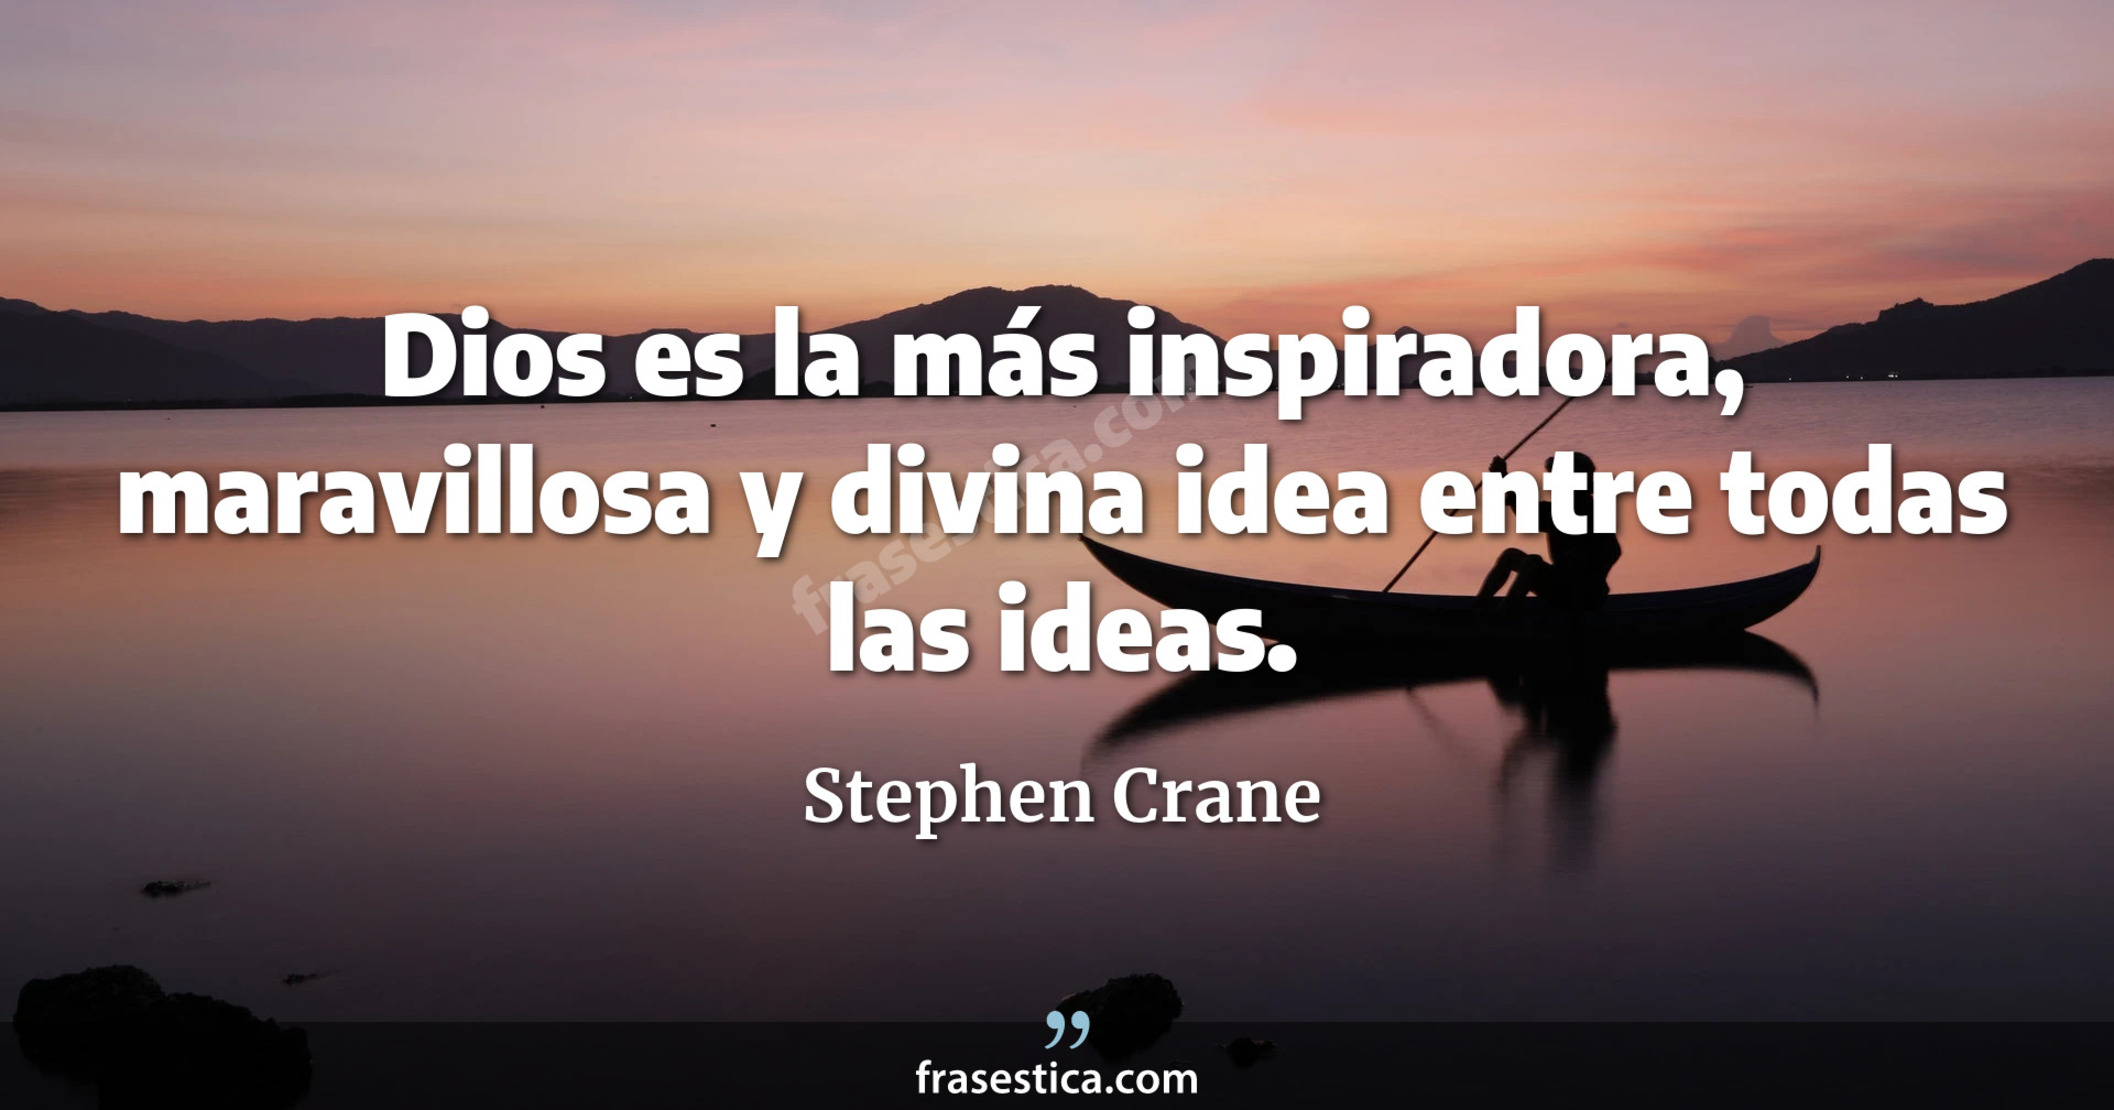 Dios es la más inspiradora, maravillosa y divina idea entre todas las ideas. - Stephen Crane